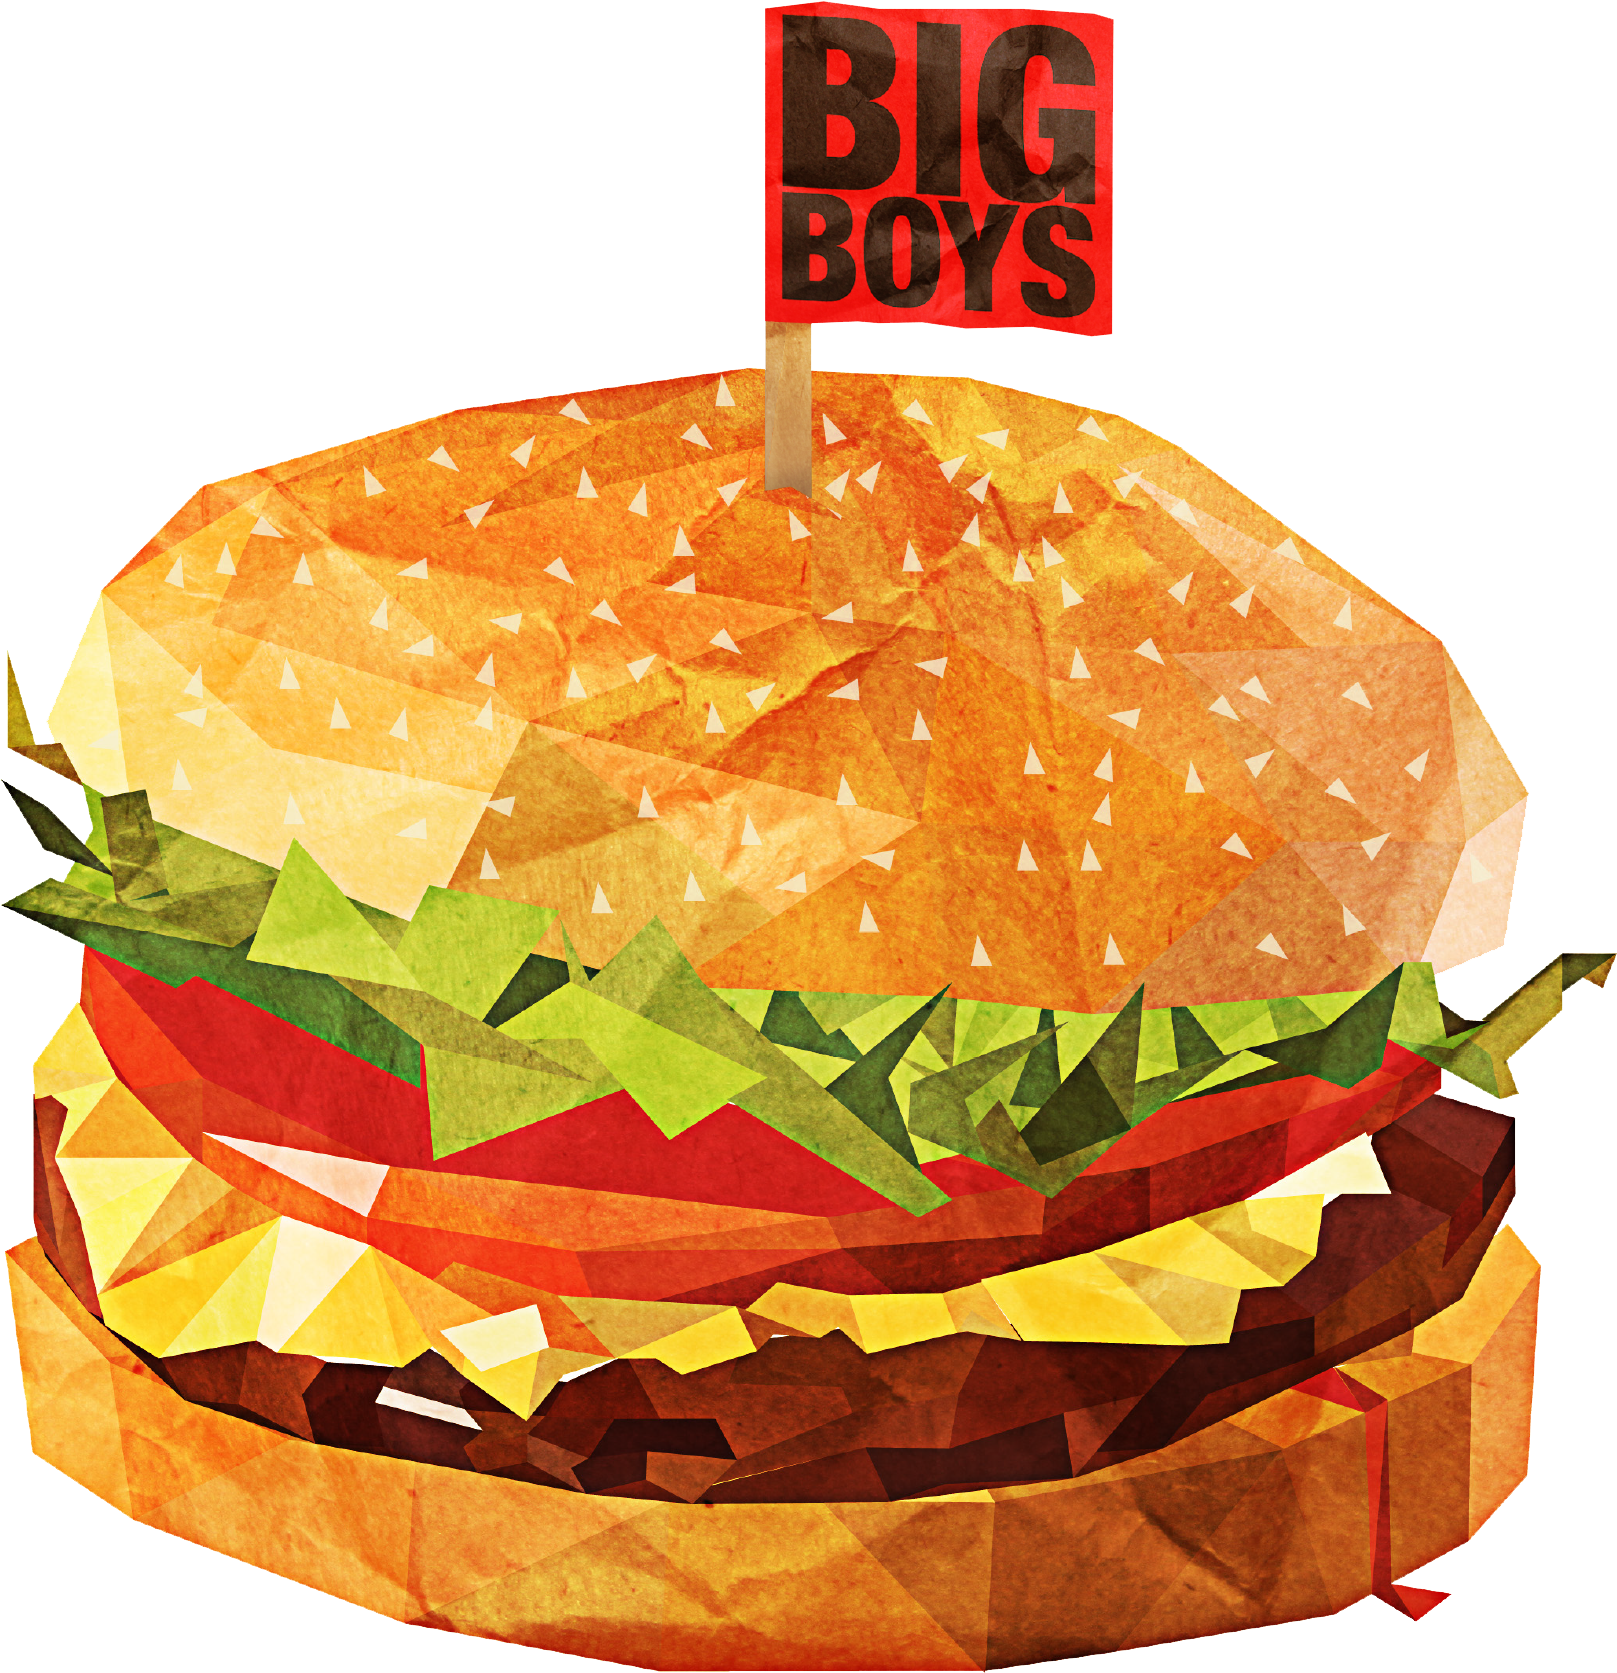 Big Boys Burgers - Food (2480x1956), Png Download